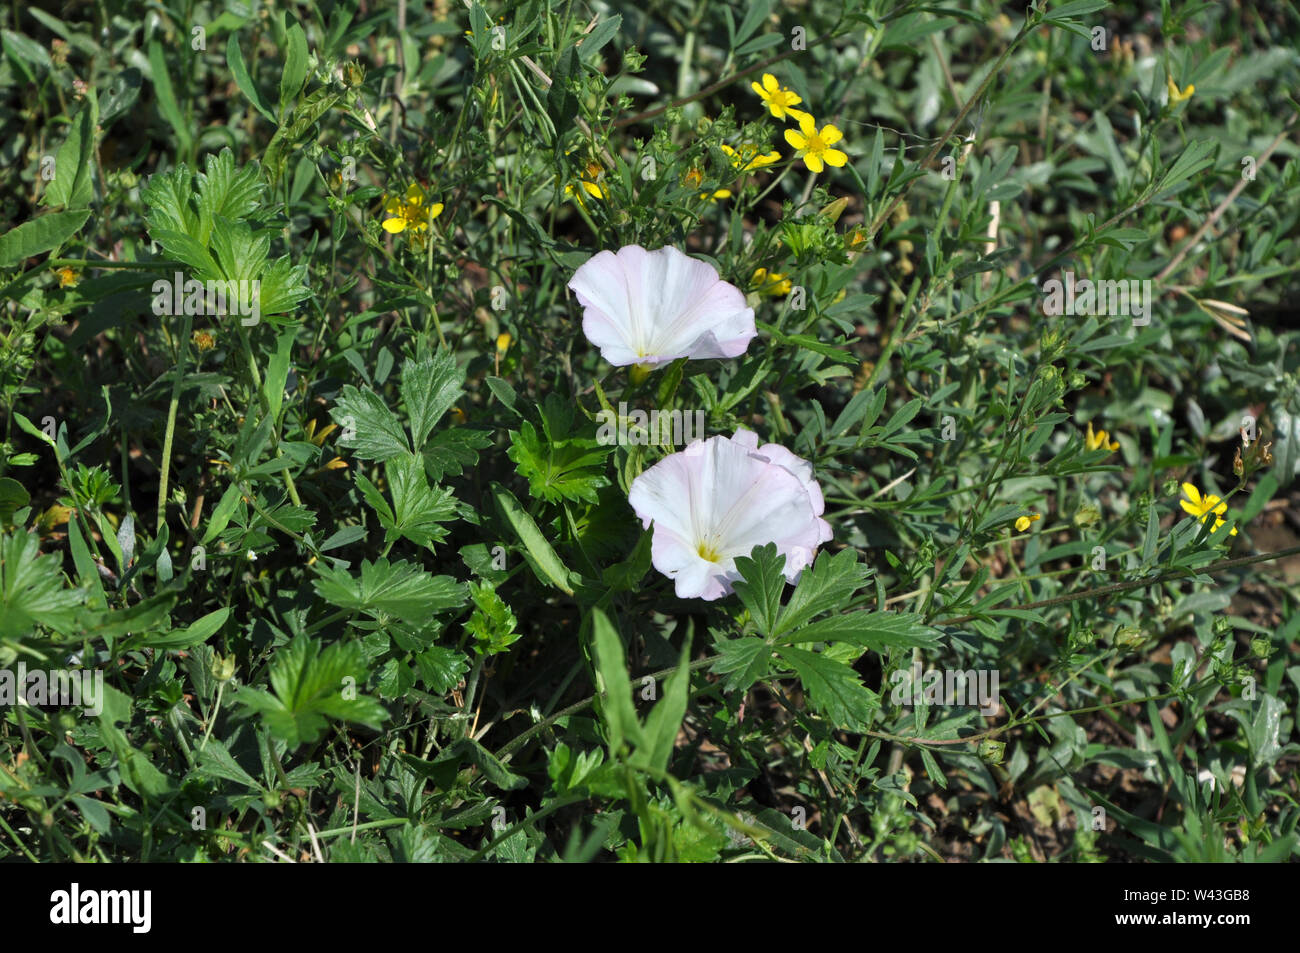 Arrière-plan horizontal avec de l'herbe bien verte, rose pâle corolles jaune et des fleurs des champs Banque D'Images